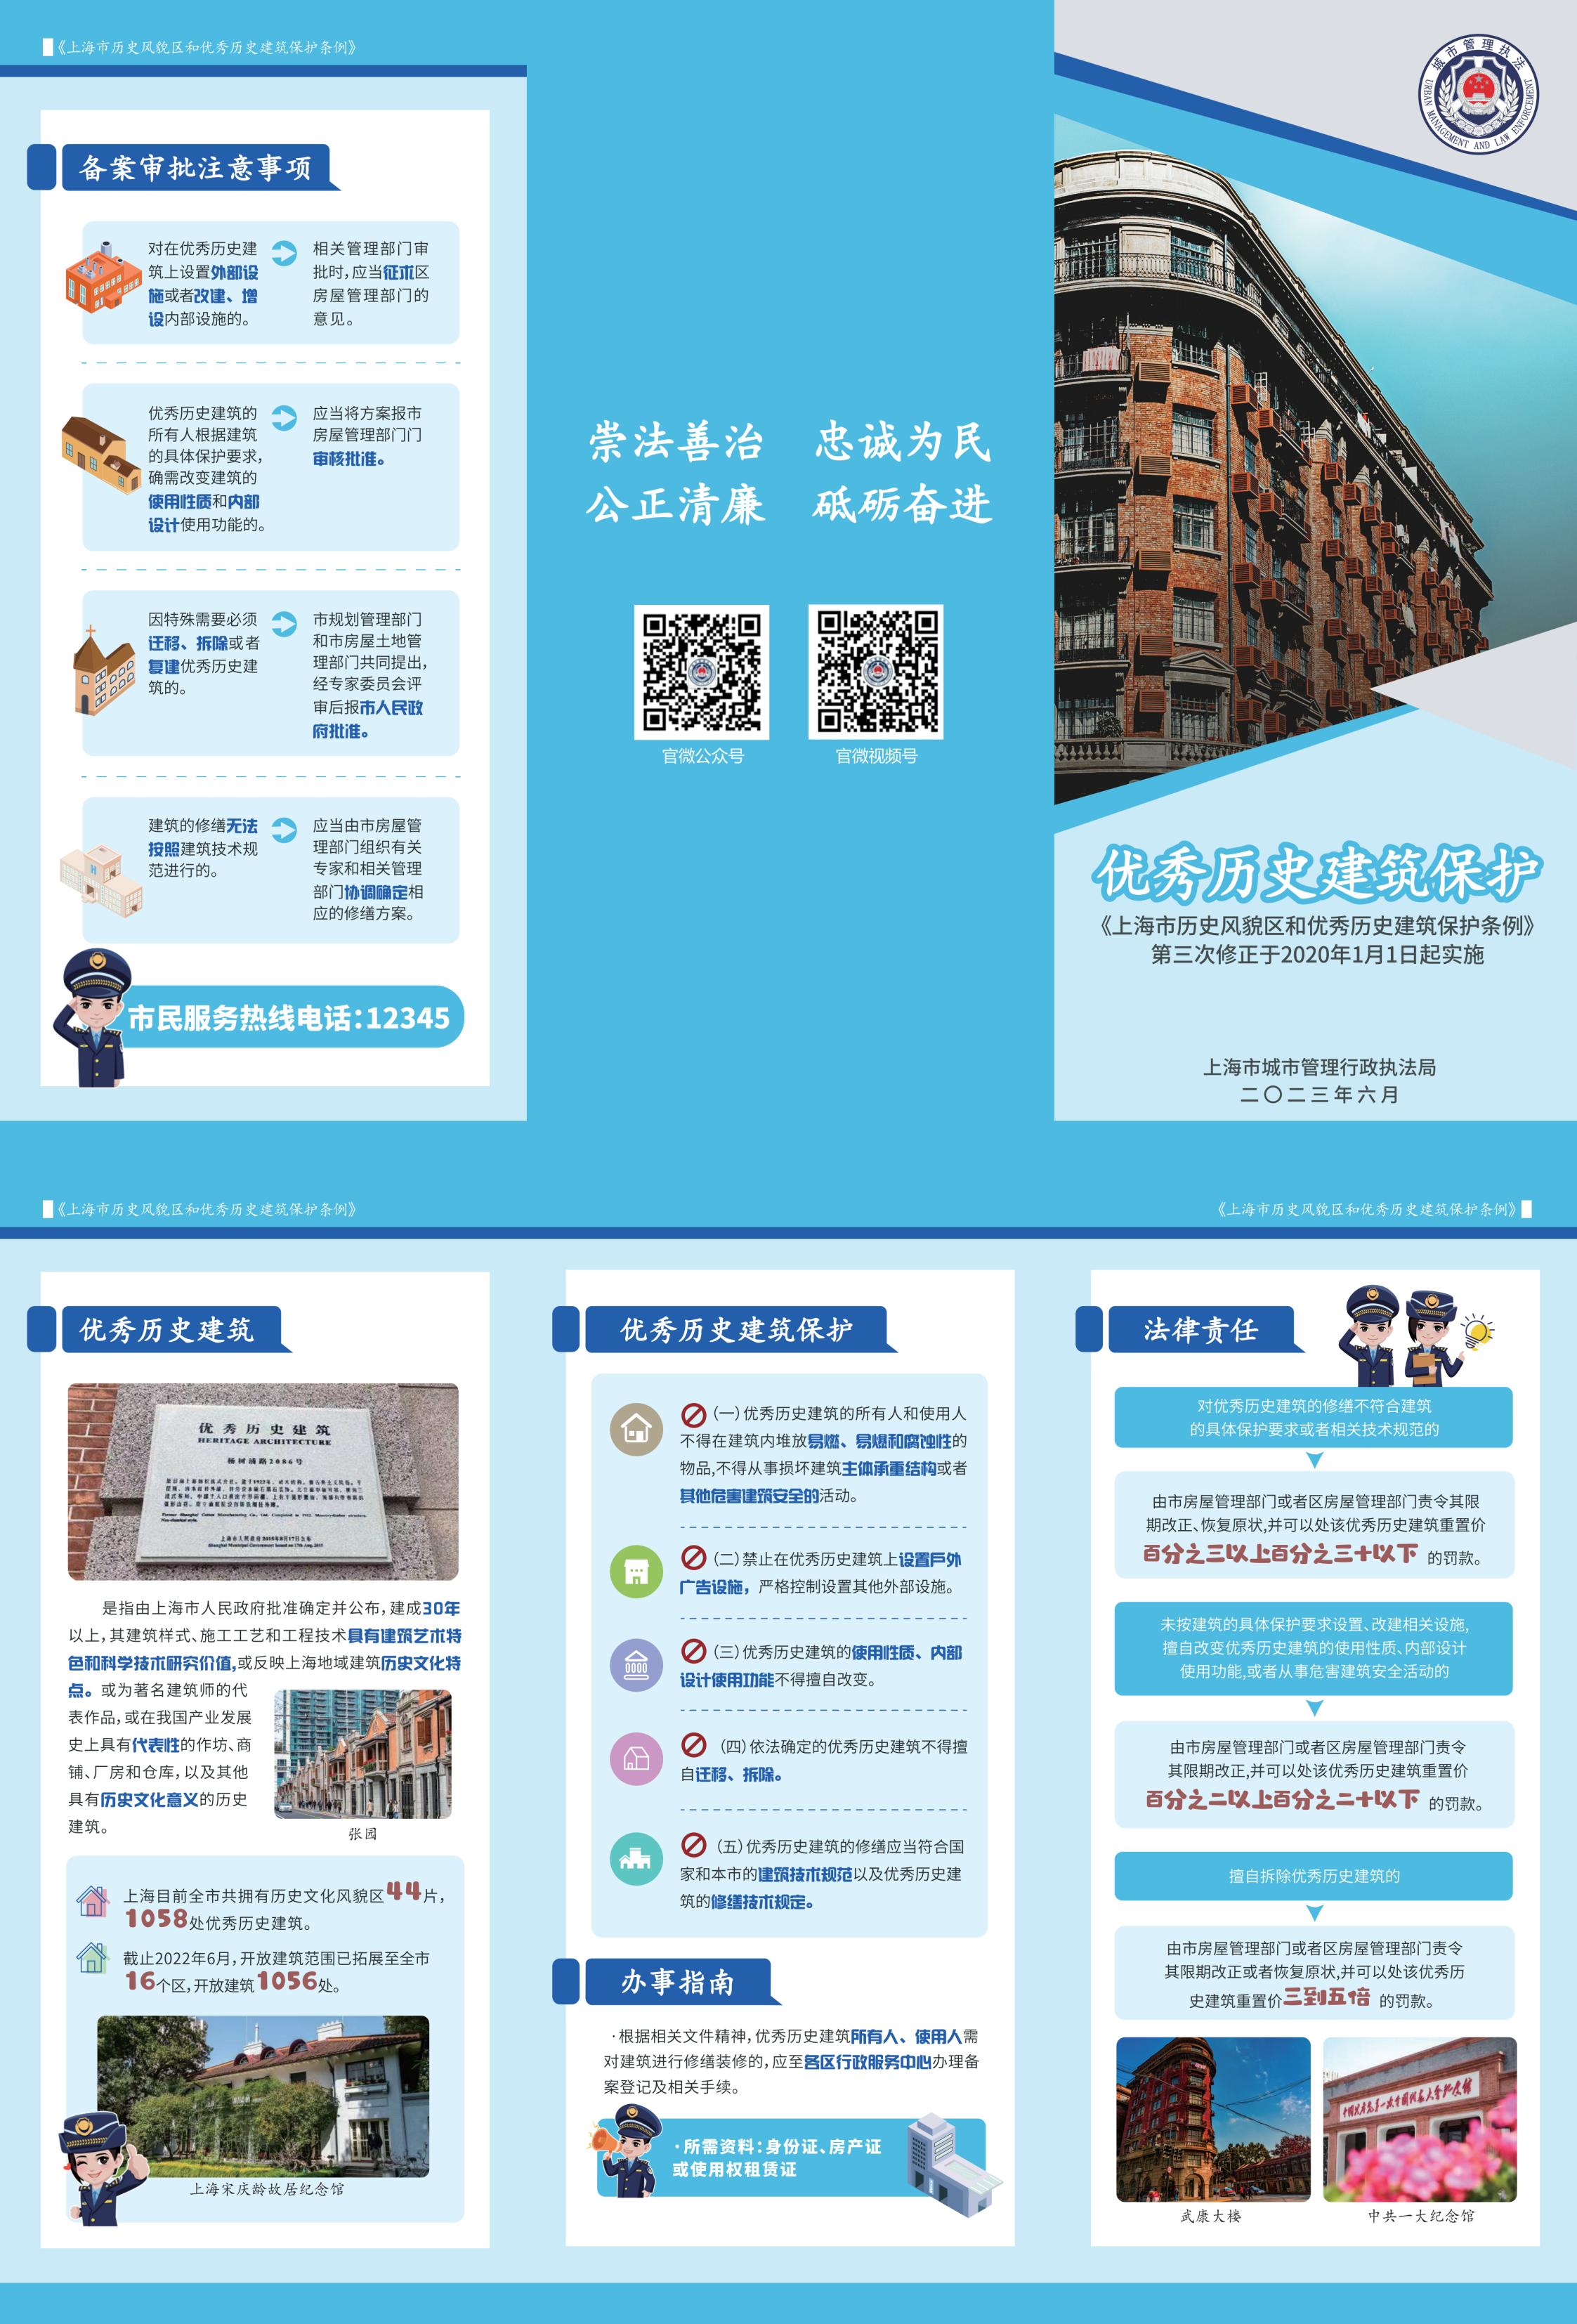 10上海市历史风貌区和优秀历史建筑保护条例_00.jpg